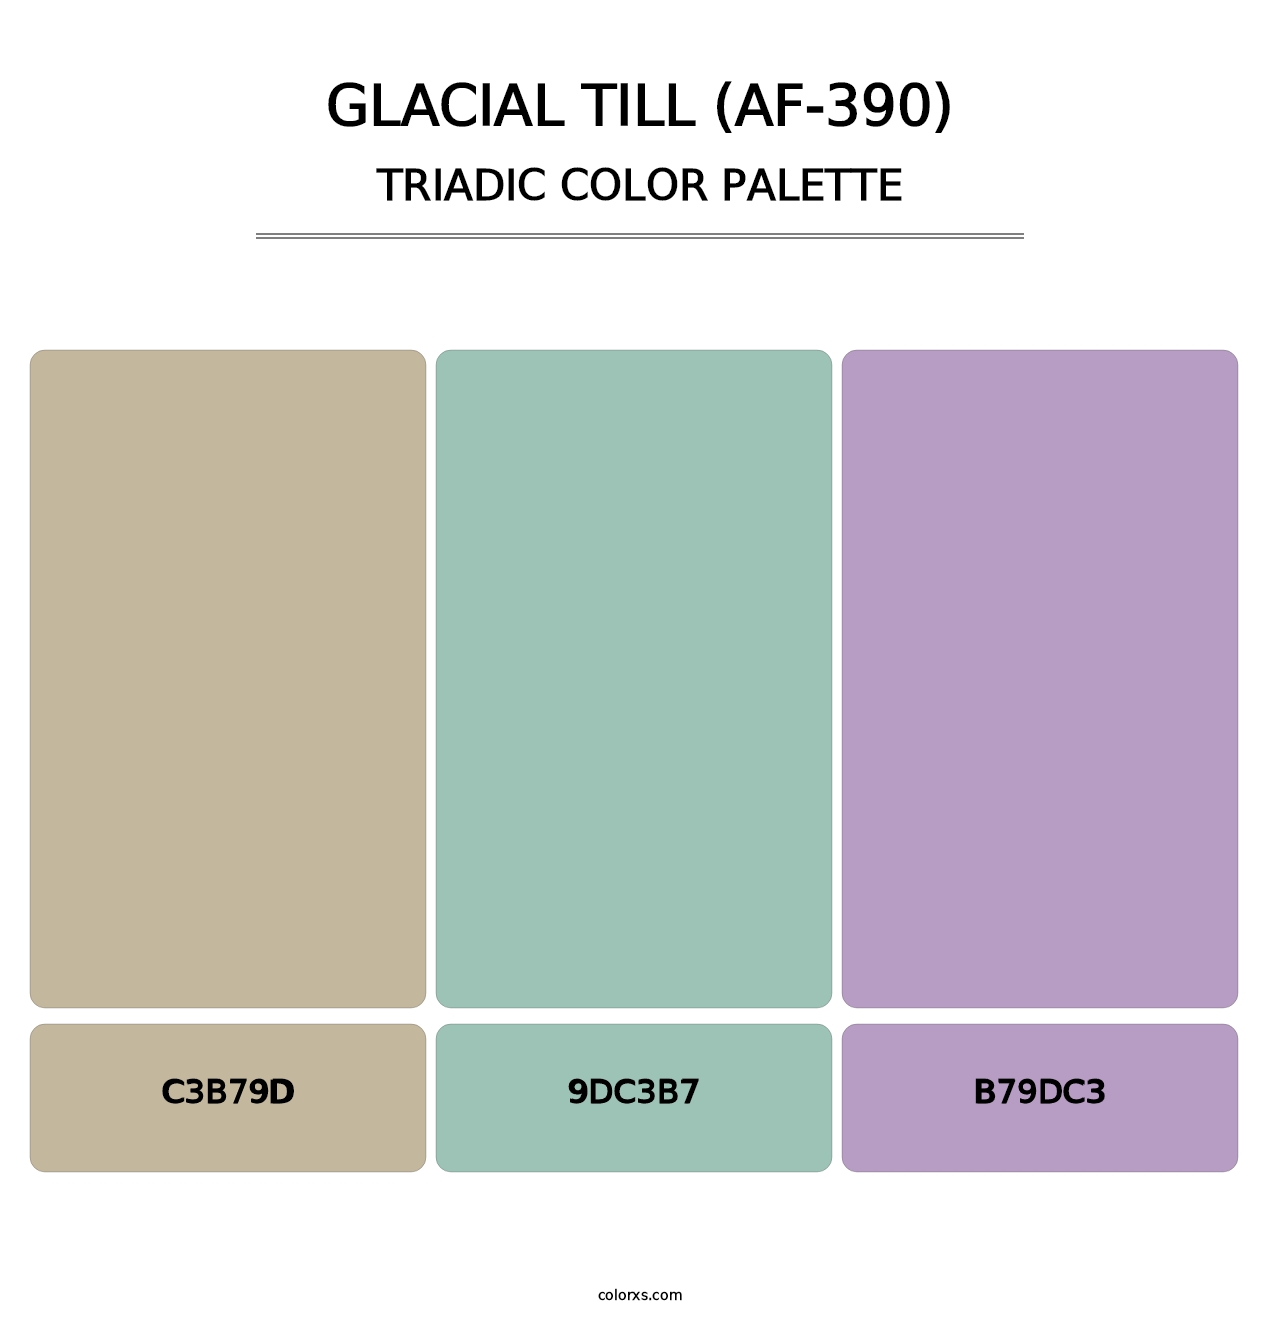 Glacial Till (AF-390) - Triadic Color Palette